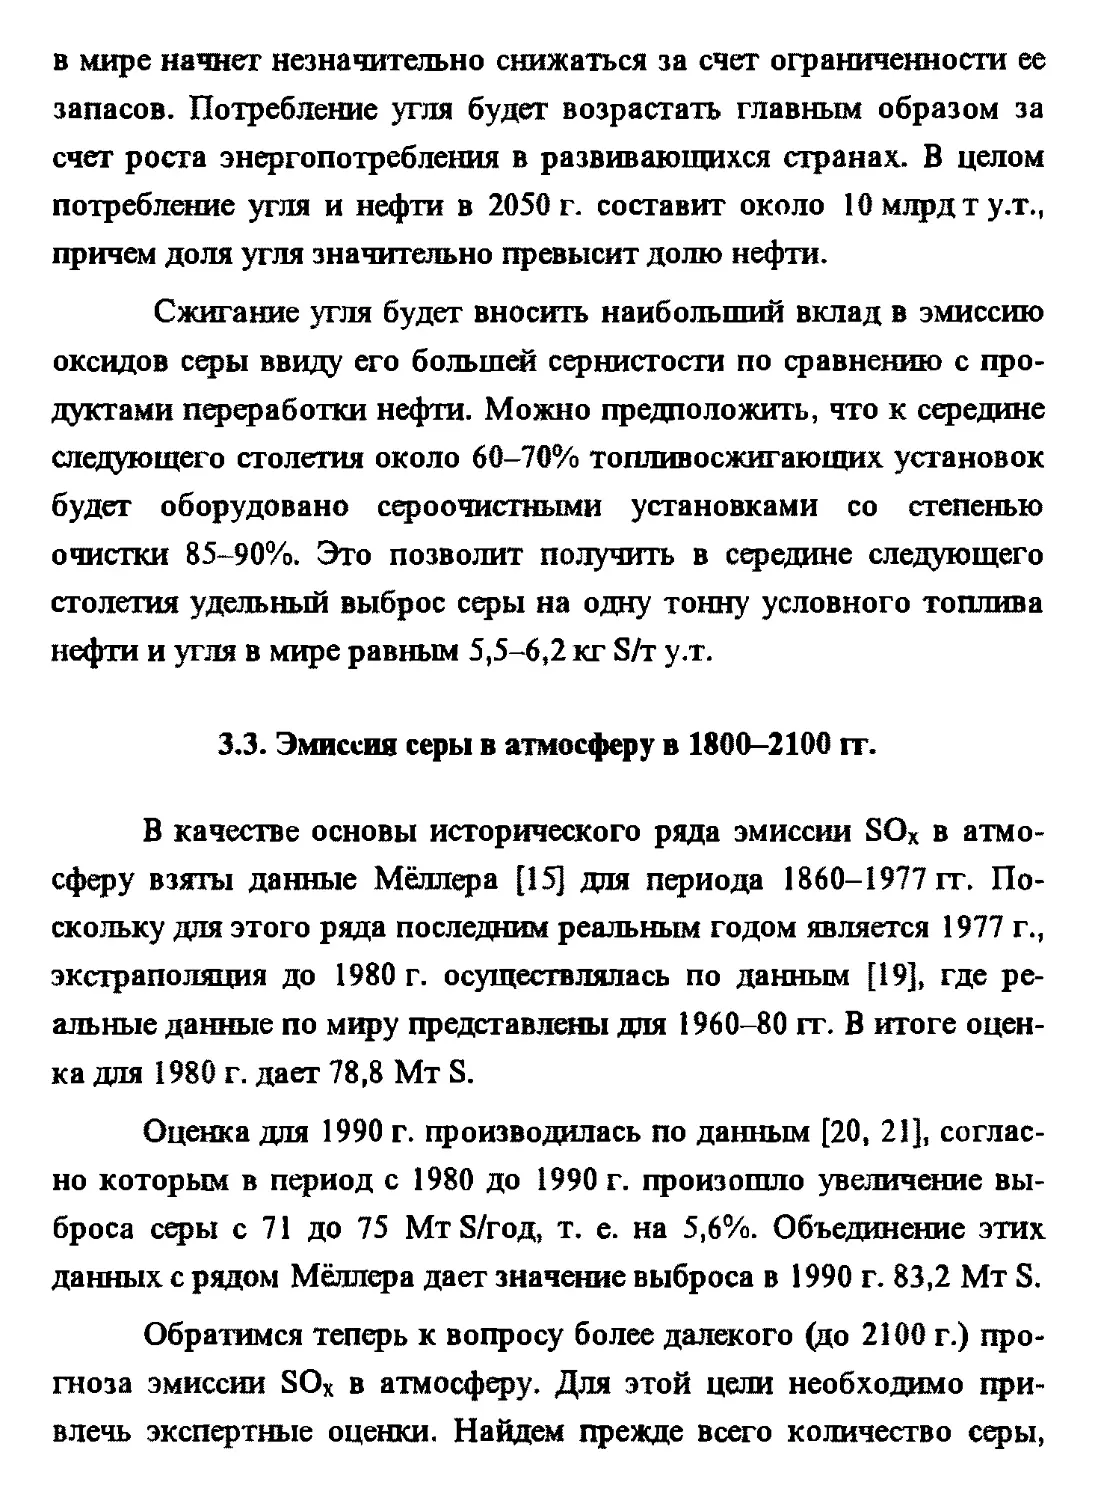 3.3. Эмиссия серы в атмосферу в 1800-2100 гг.